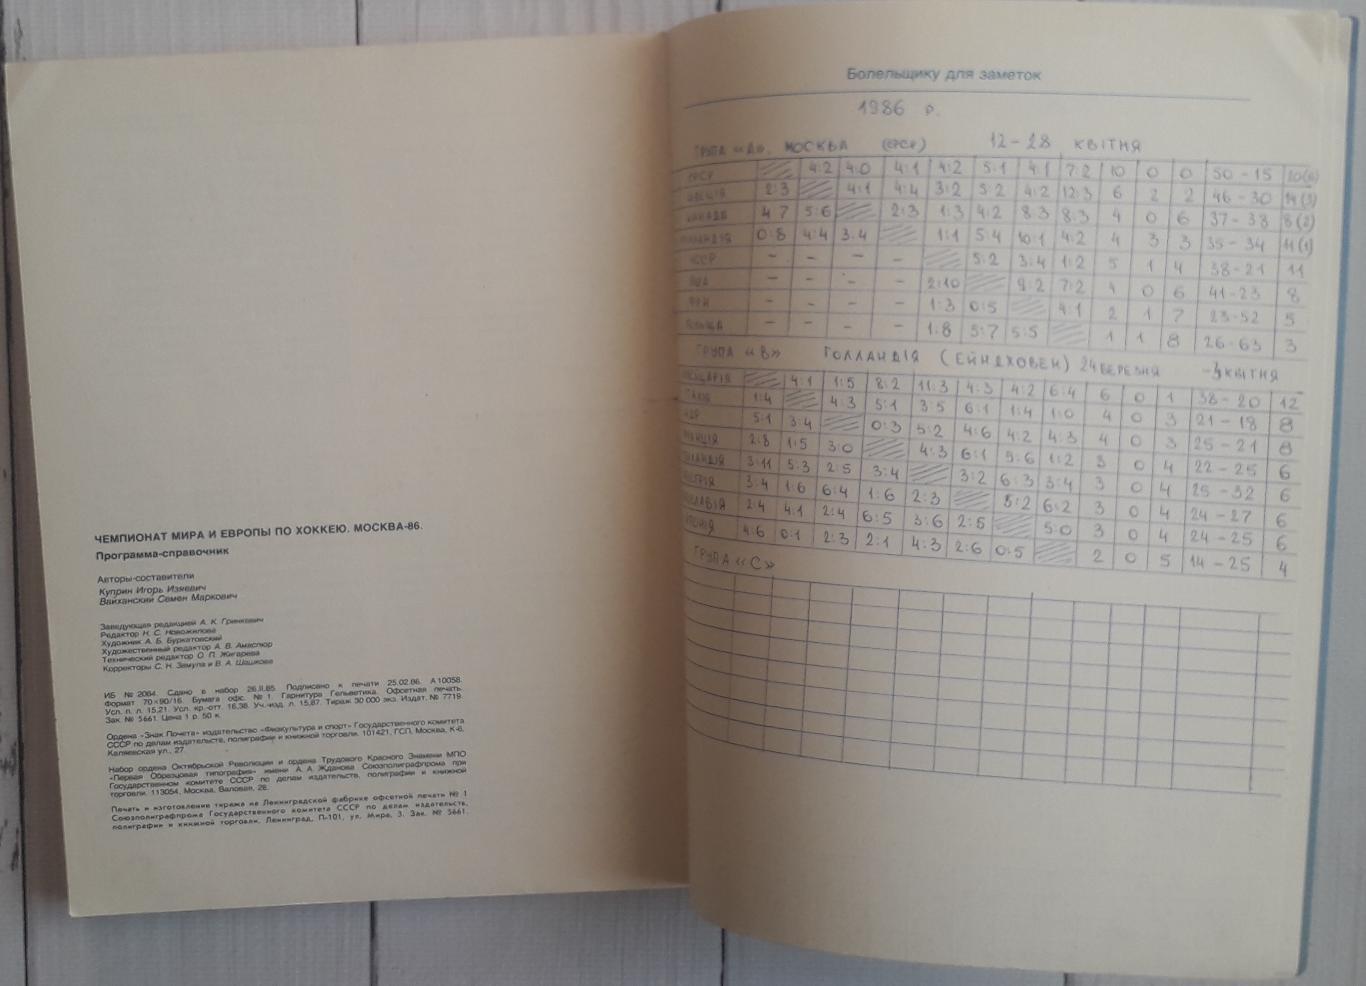 Програма-календар. Чемпіонат Світу і Європи по хокею. Москва-86. 1